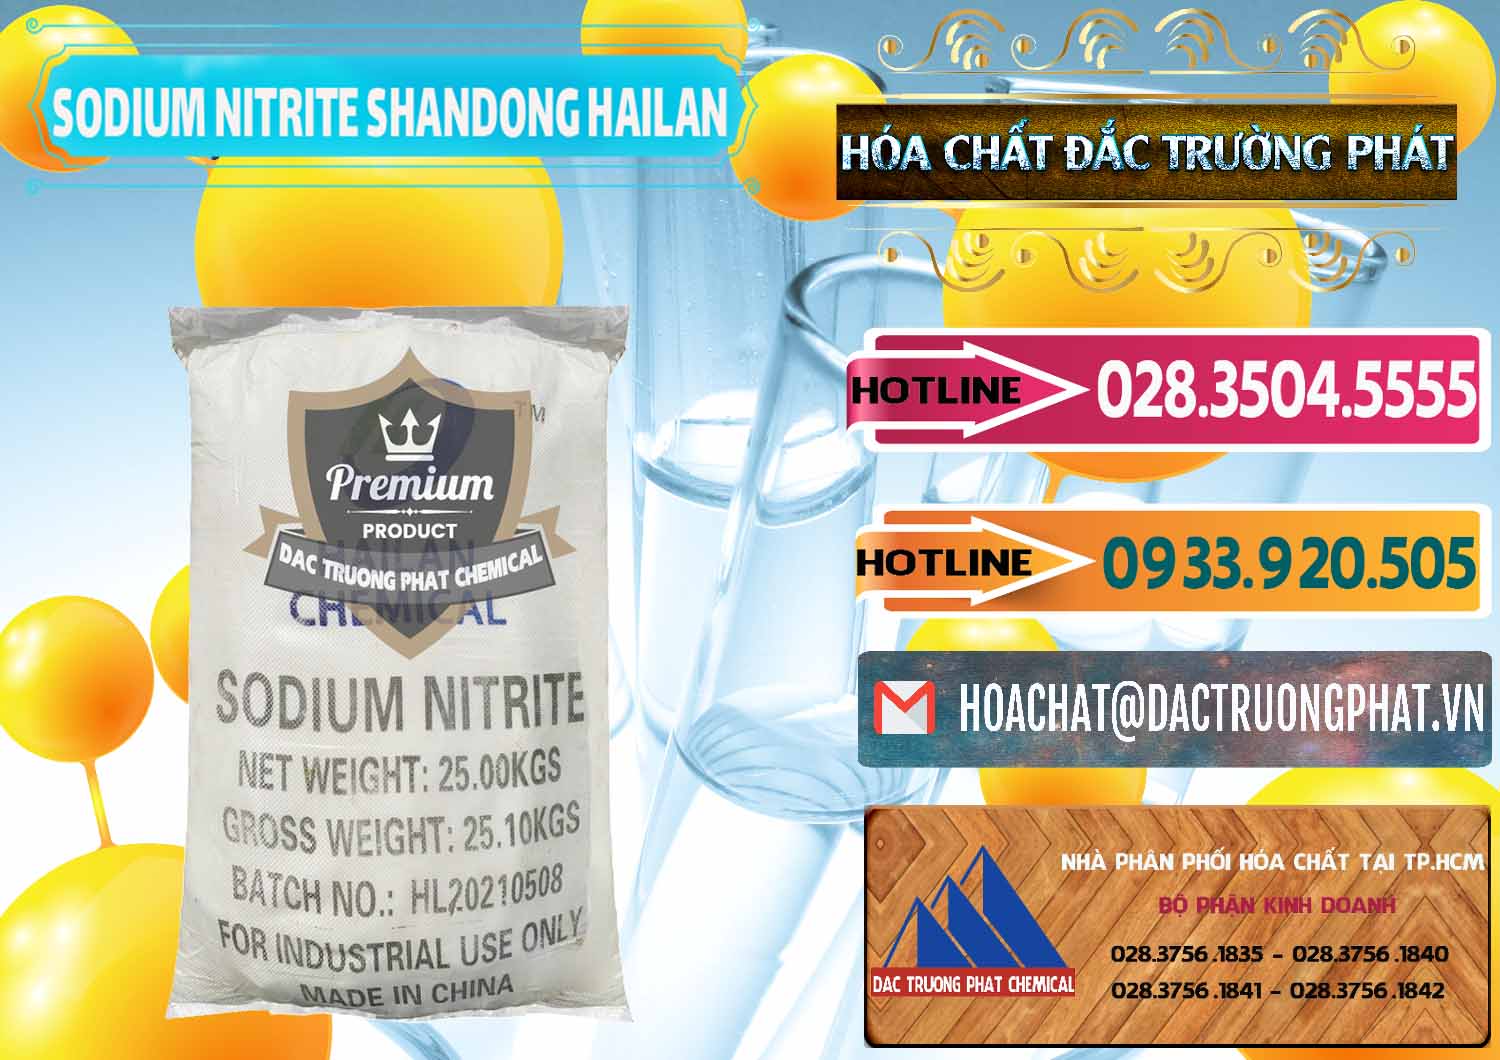 Nơi chuyên bán - cung cấp Sodium Nitrite - NANO2 99.3% Shandong Hailan Trung Quốc China - 0284 - Nhà phân phối và cung cấp hóa chất tại TP.HCM - dactruongphat.vn